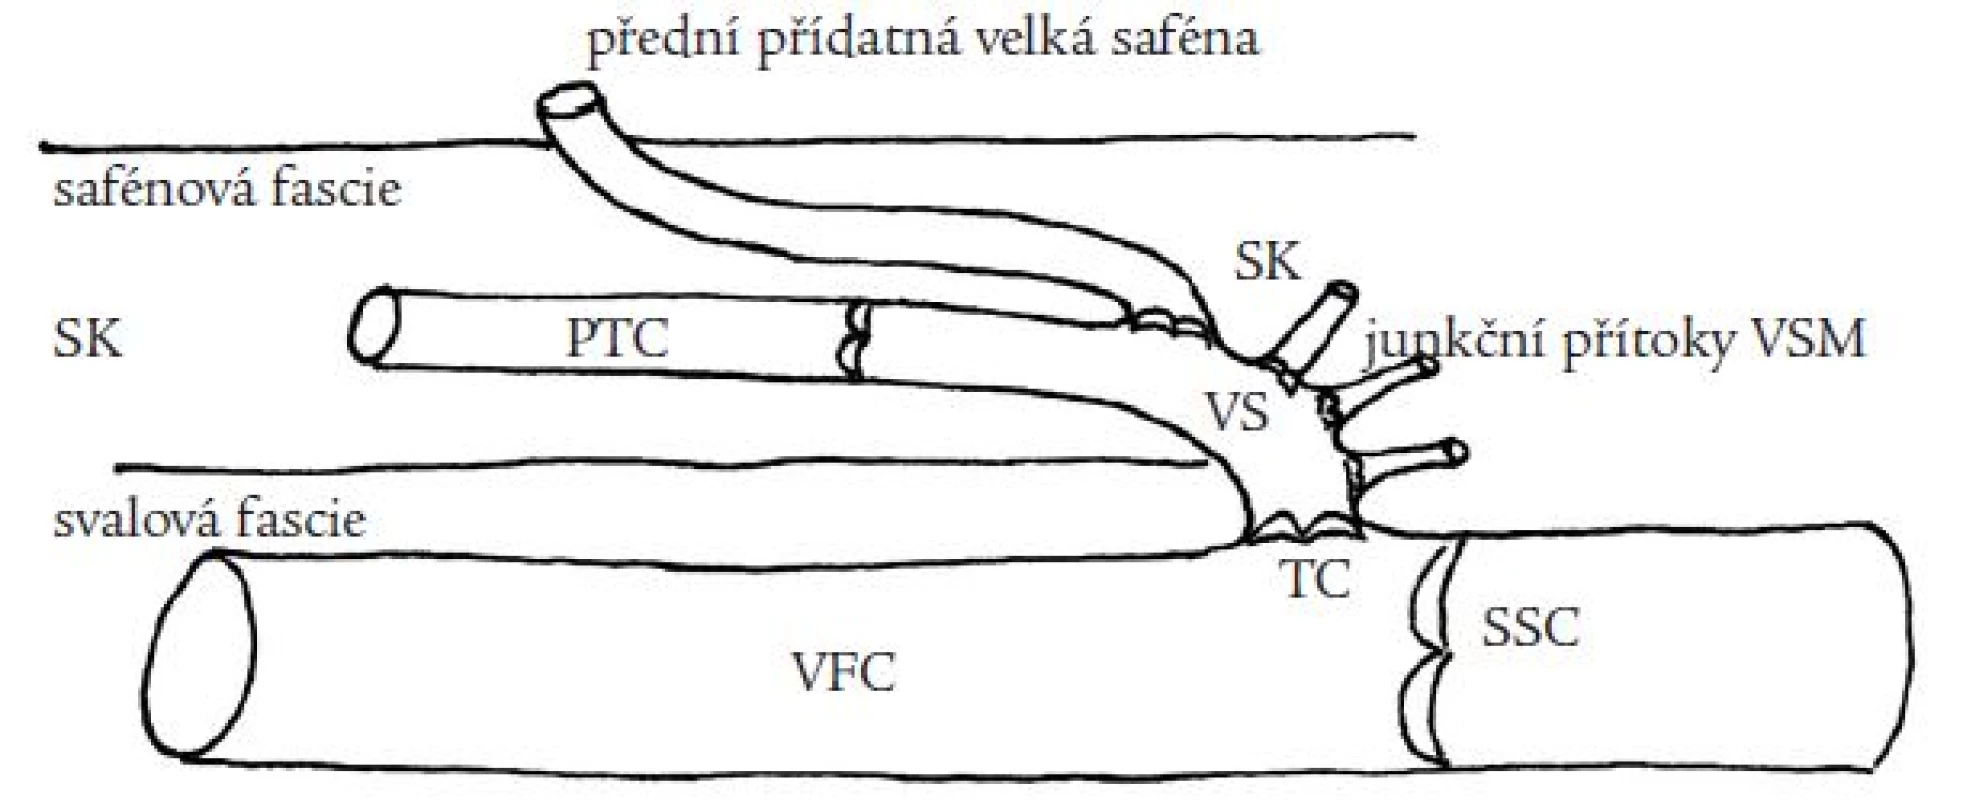 Anatomie přední přídatné velké safény (PPVS). PPVS odstupuje z velké safény v různé vzdálenosti od terminální chlopně (TC), probíhá v safénovém kompartmentu (SK) ohraničeném safénovou a svalovou fascií, v různé vzdálenosti od svého odstupu z VS proráží safénovou fascii do povrchnějších částí podkoží.